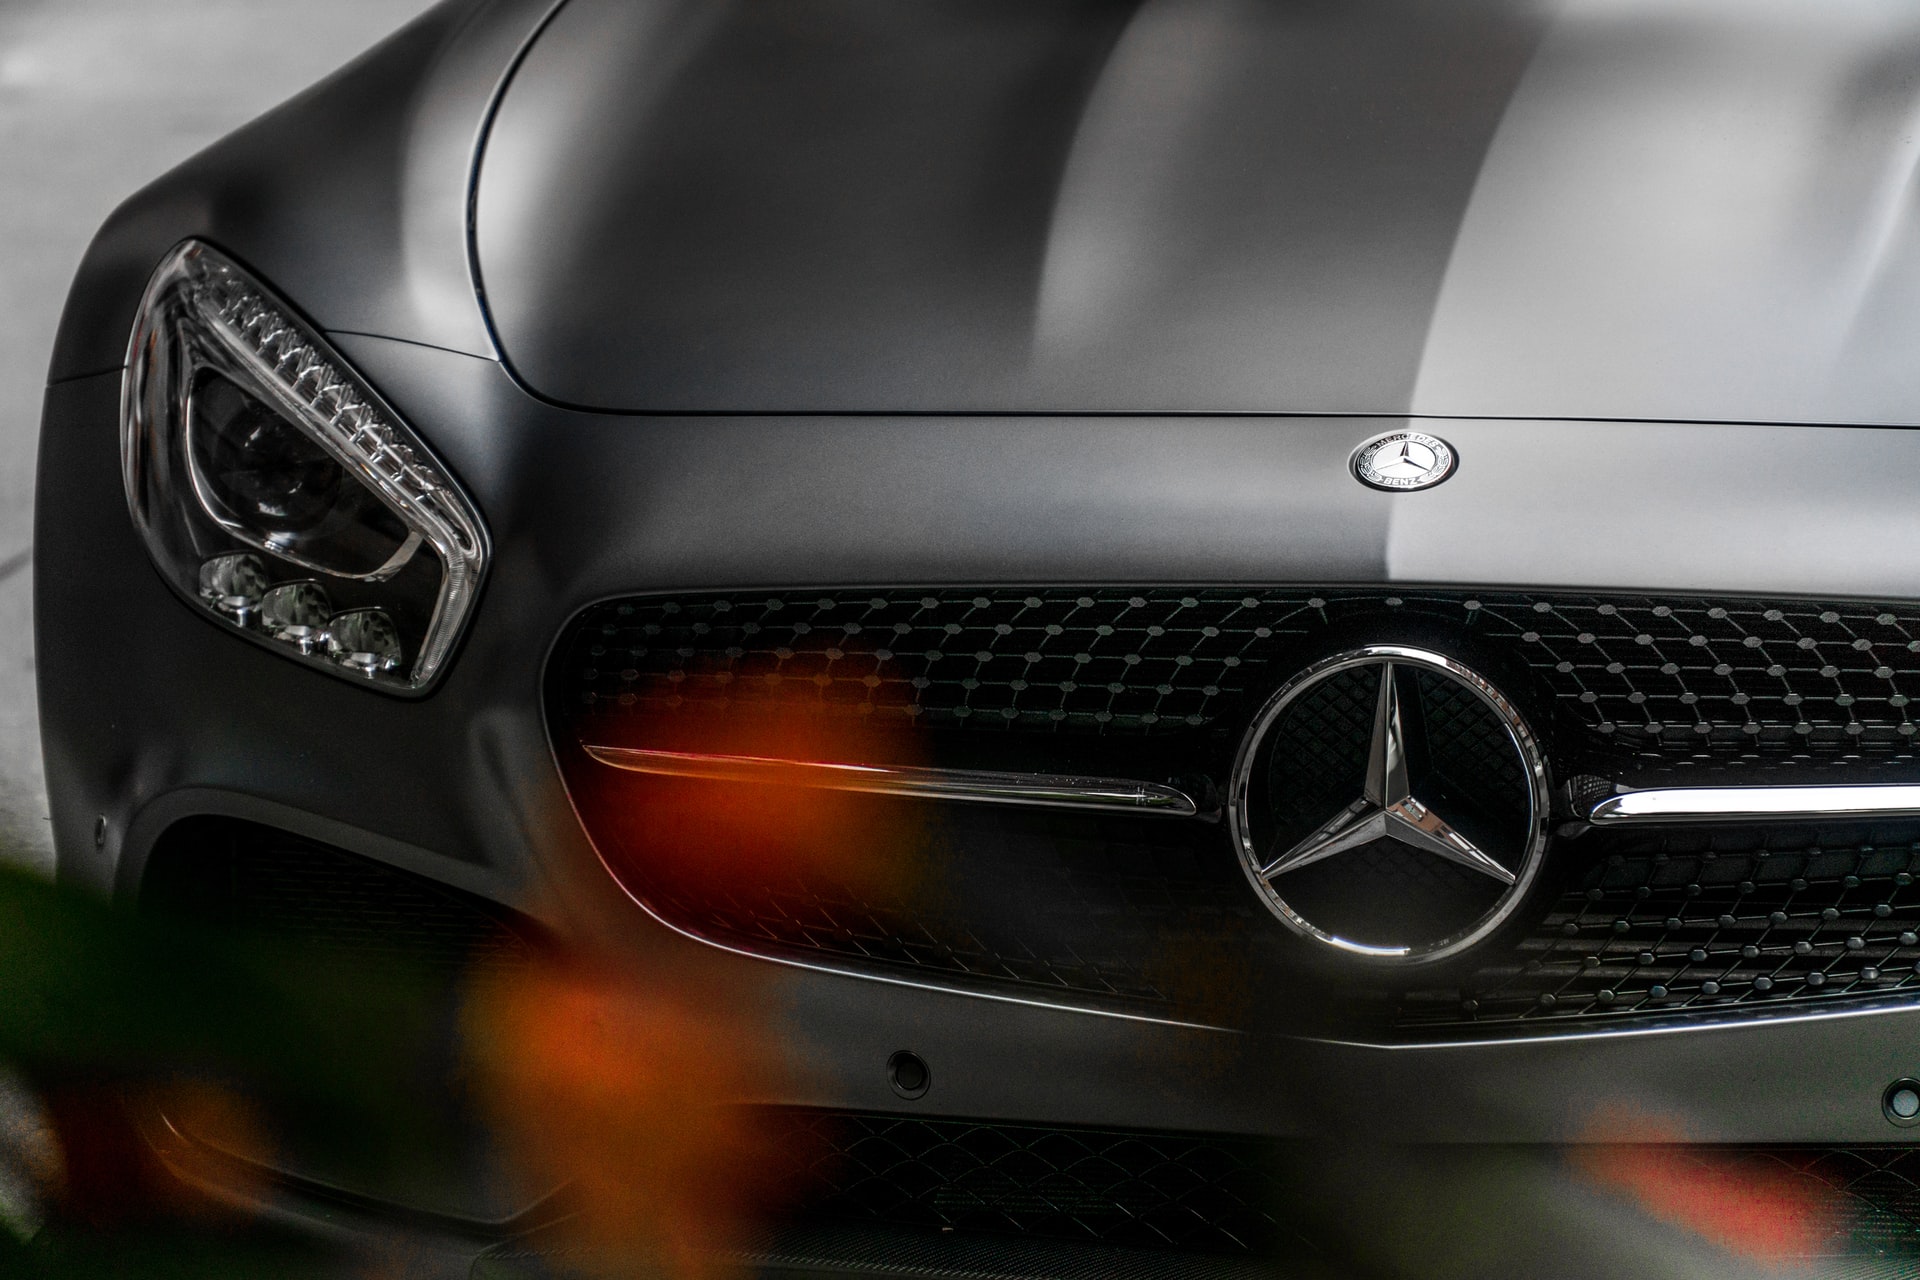 A closeup of a Mercedes Benz emblem